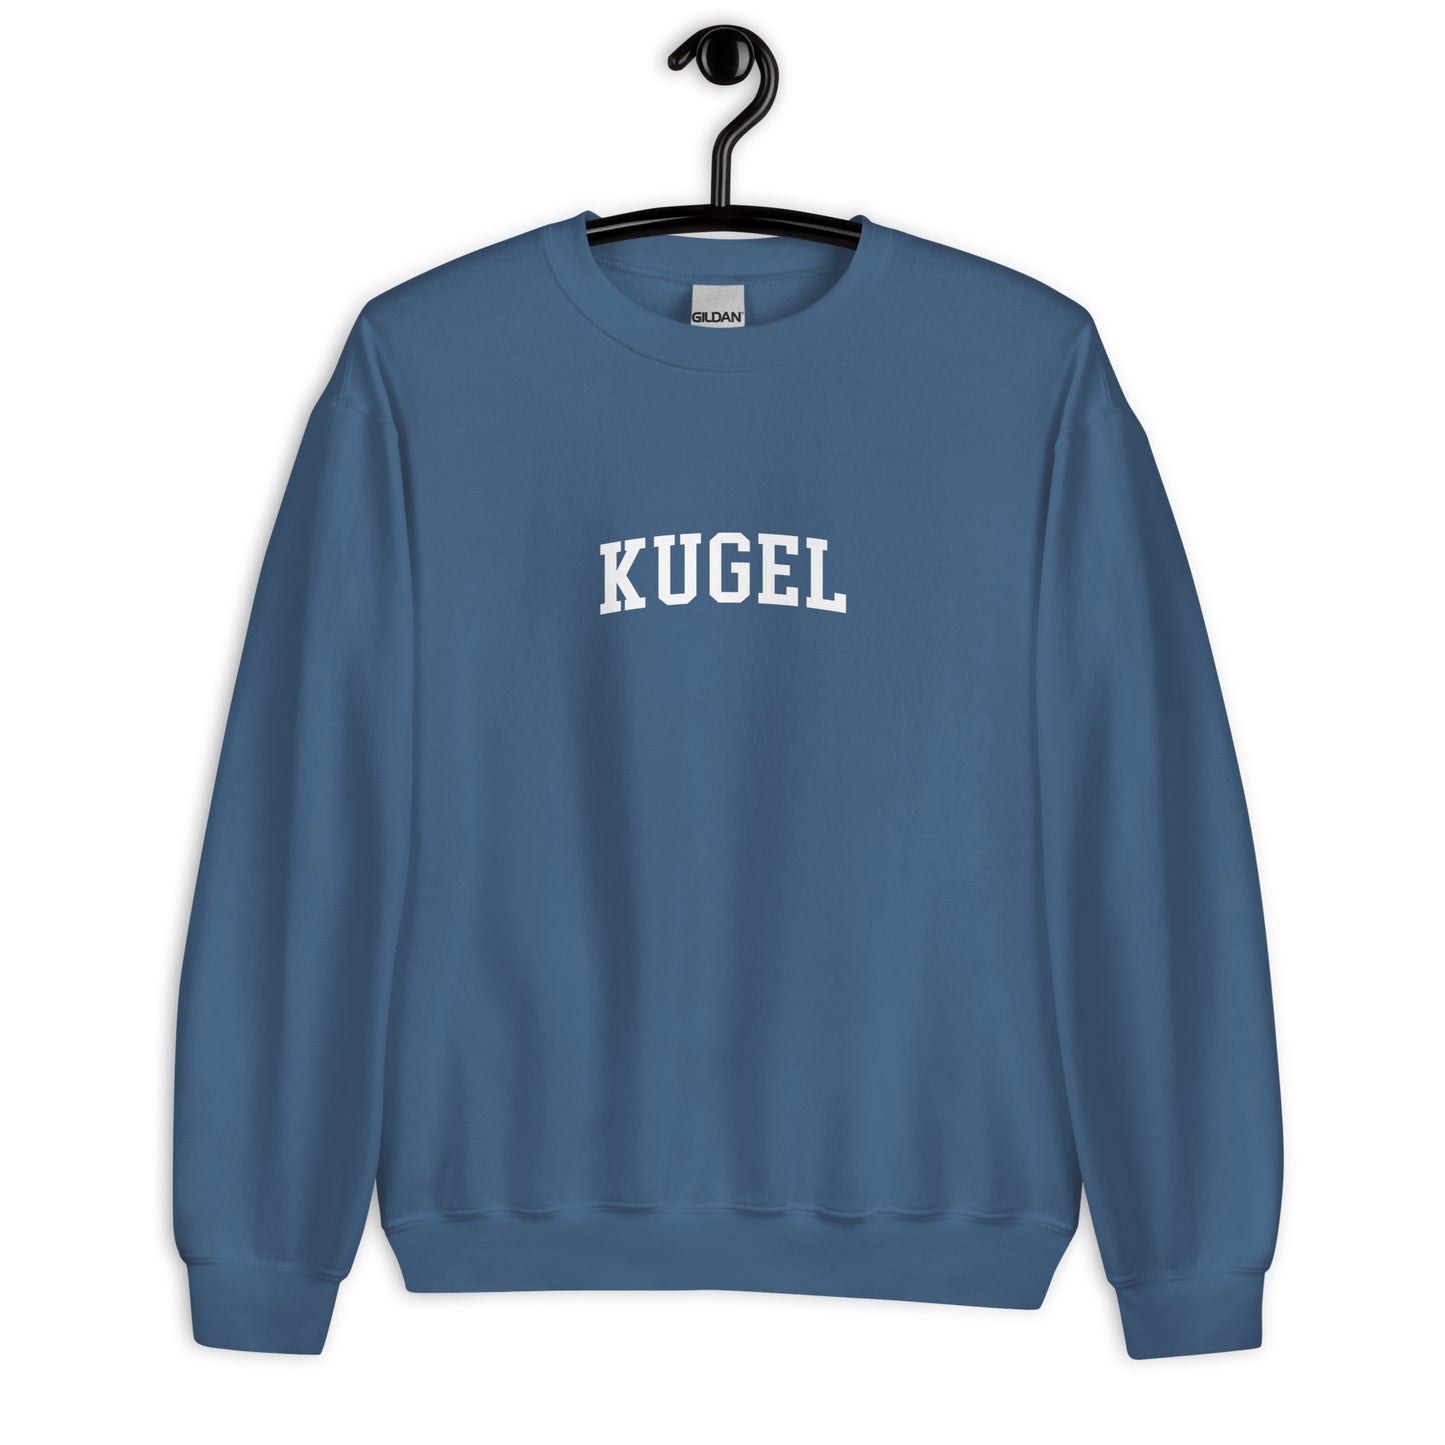 Kugel Sweatshirt - Arched Font